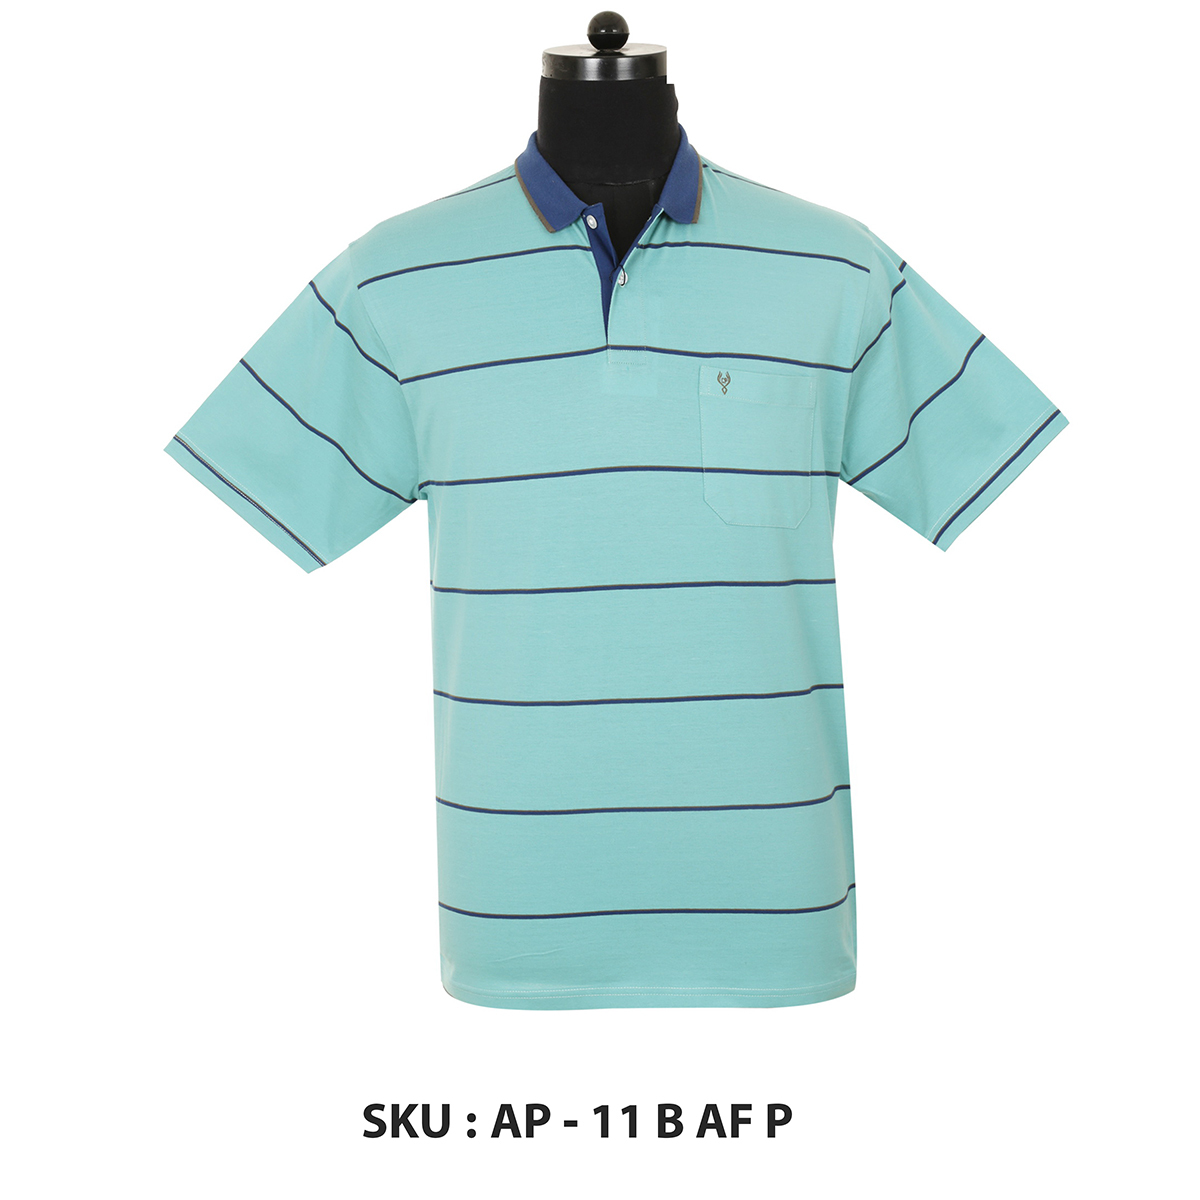 Classic Polo Mens T Shirt Ap - 11 B Af P Aqua 3XL